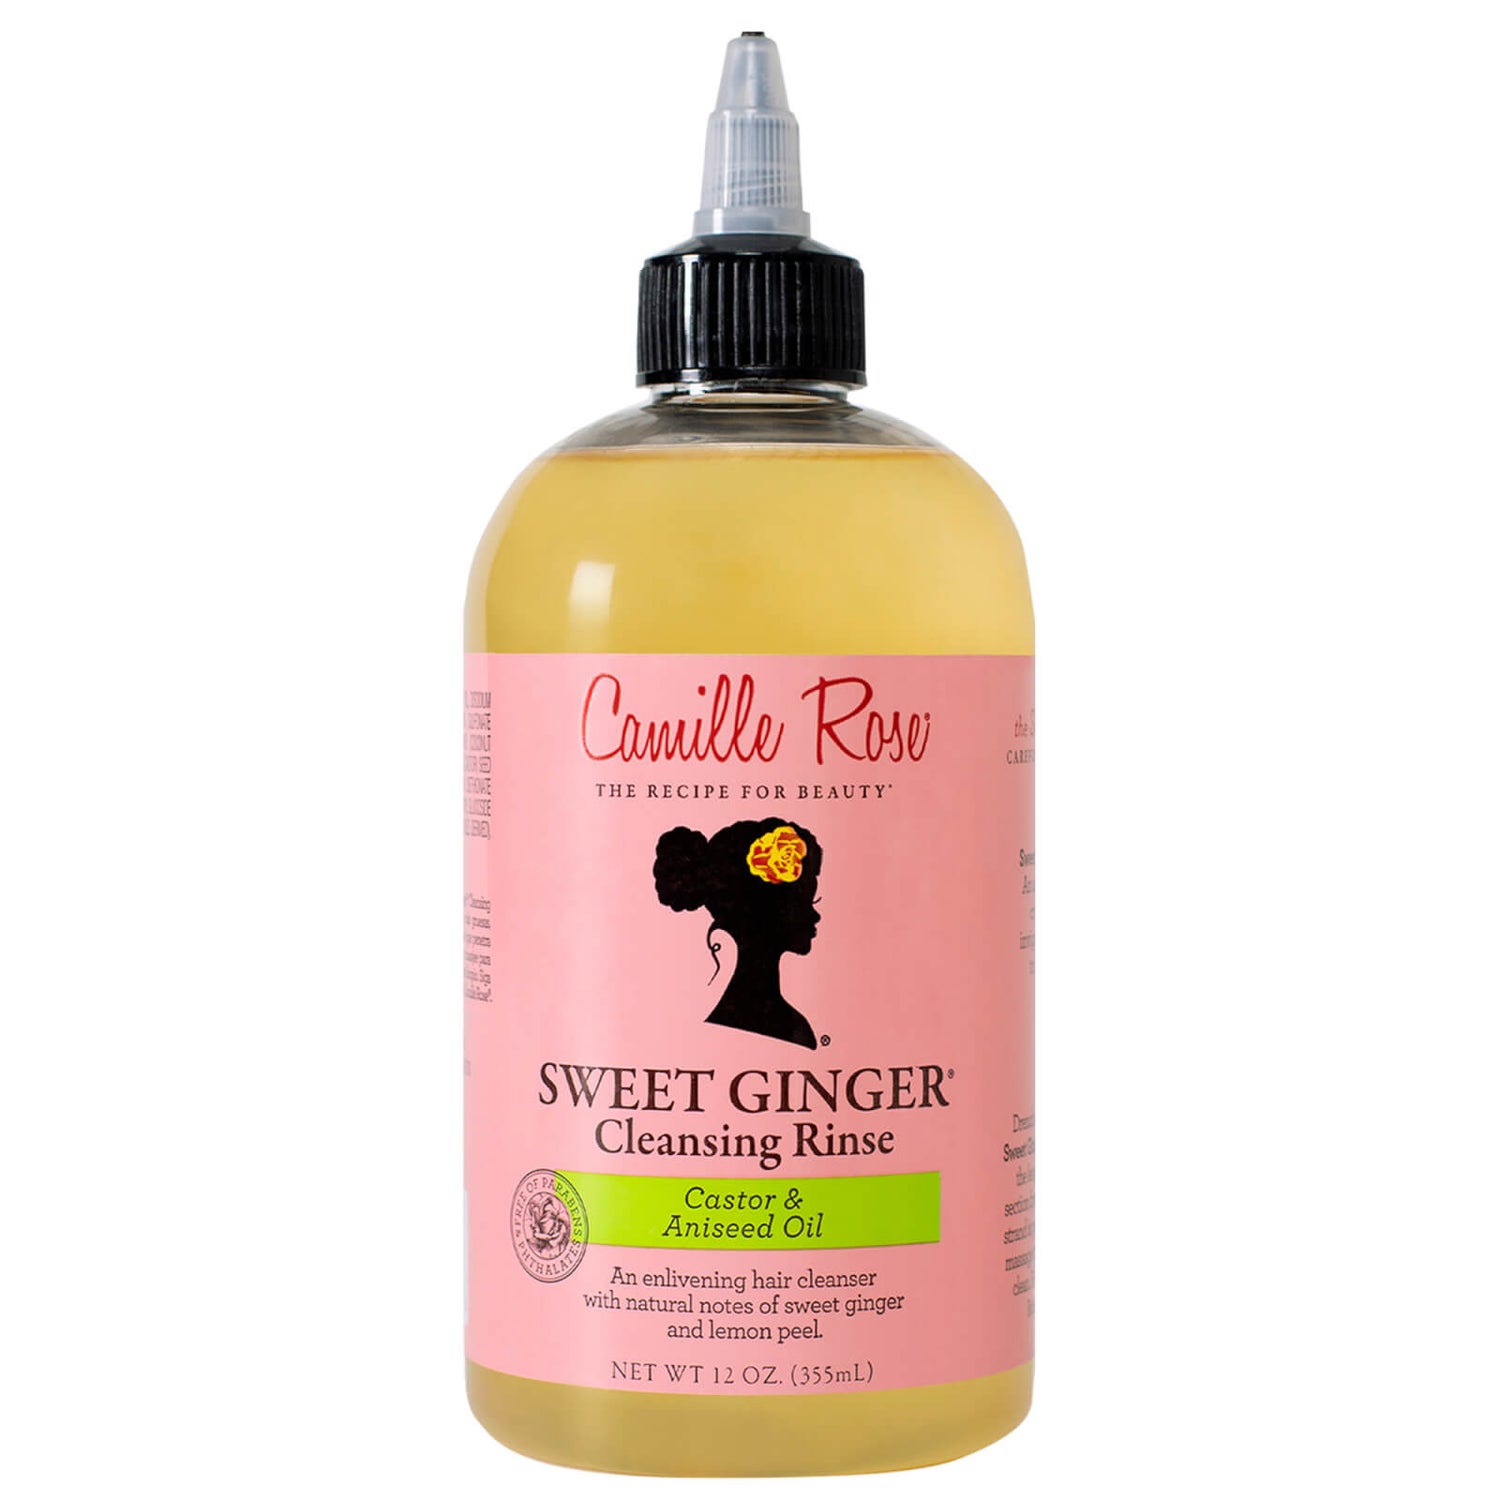 Camille Rose Sweet Ginger Cleansing Rinse Shampoo 355ml Gratis